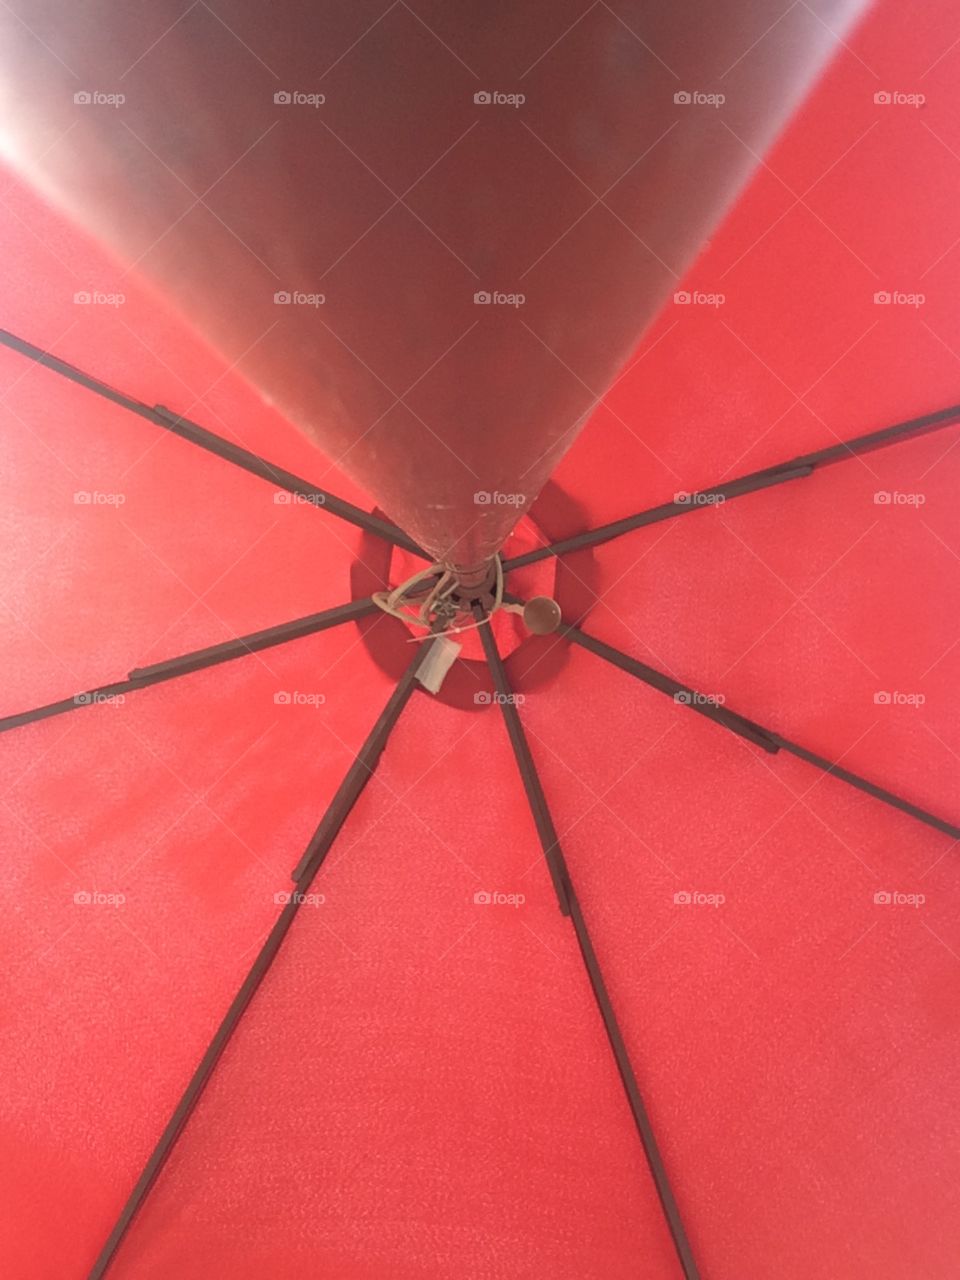 Umbrella. Summer patio umbrella